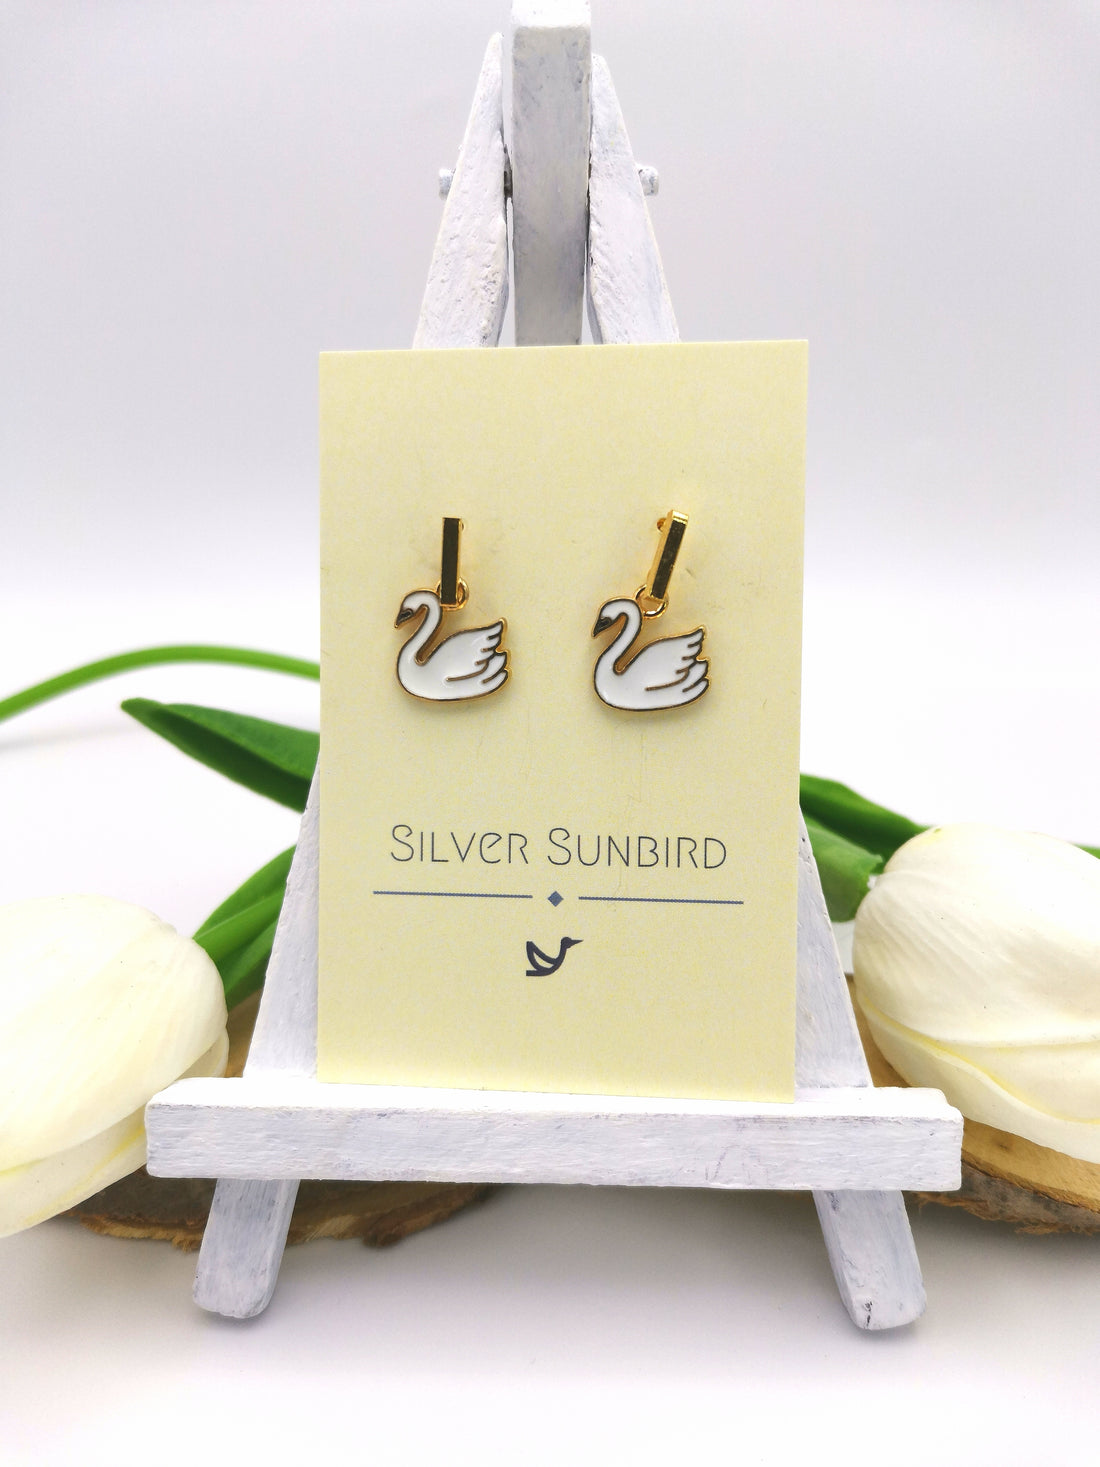 Graceful Swan Earrings - Silver Sunbird animal earrings